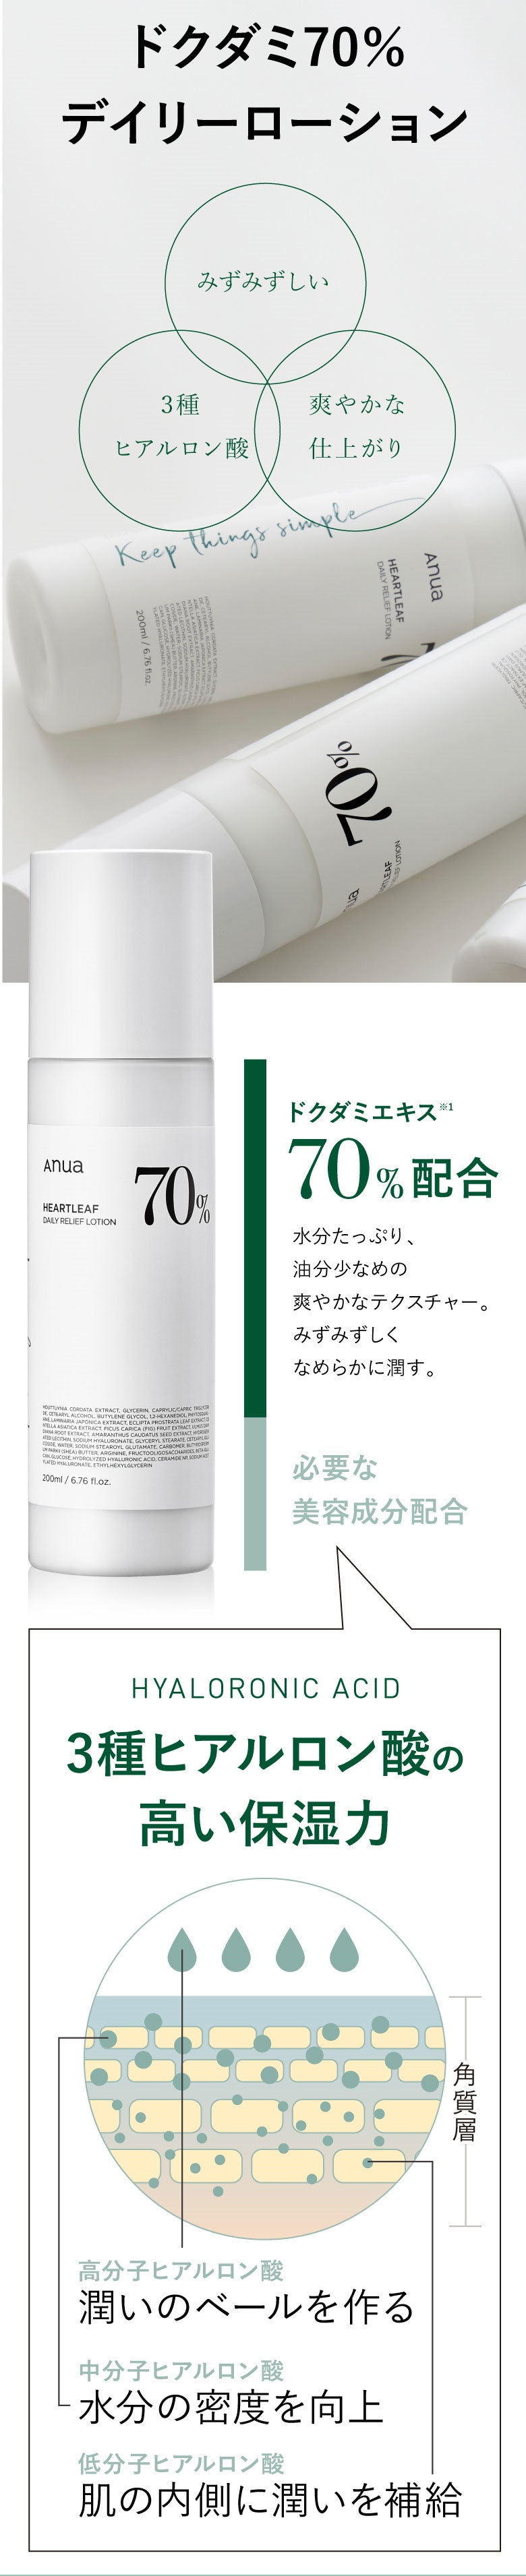 アヌア ドクダミ70%デイリーローション 200ml - 基礎化粧品